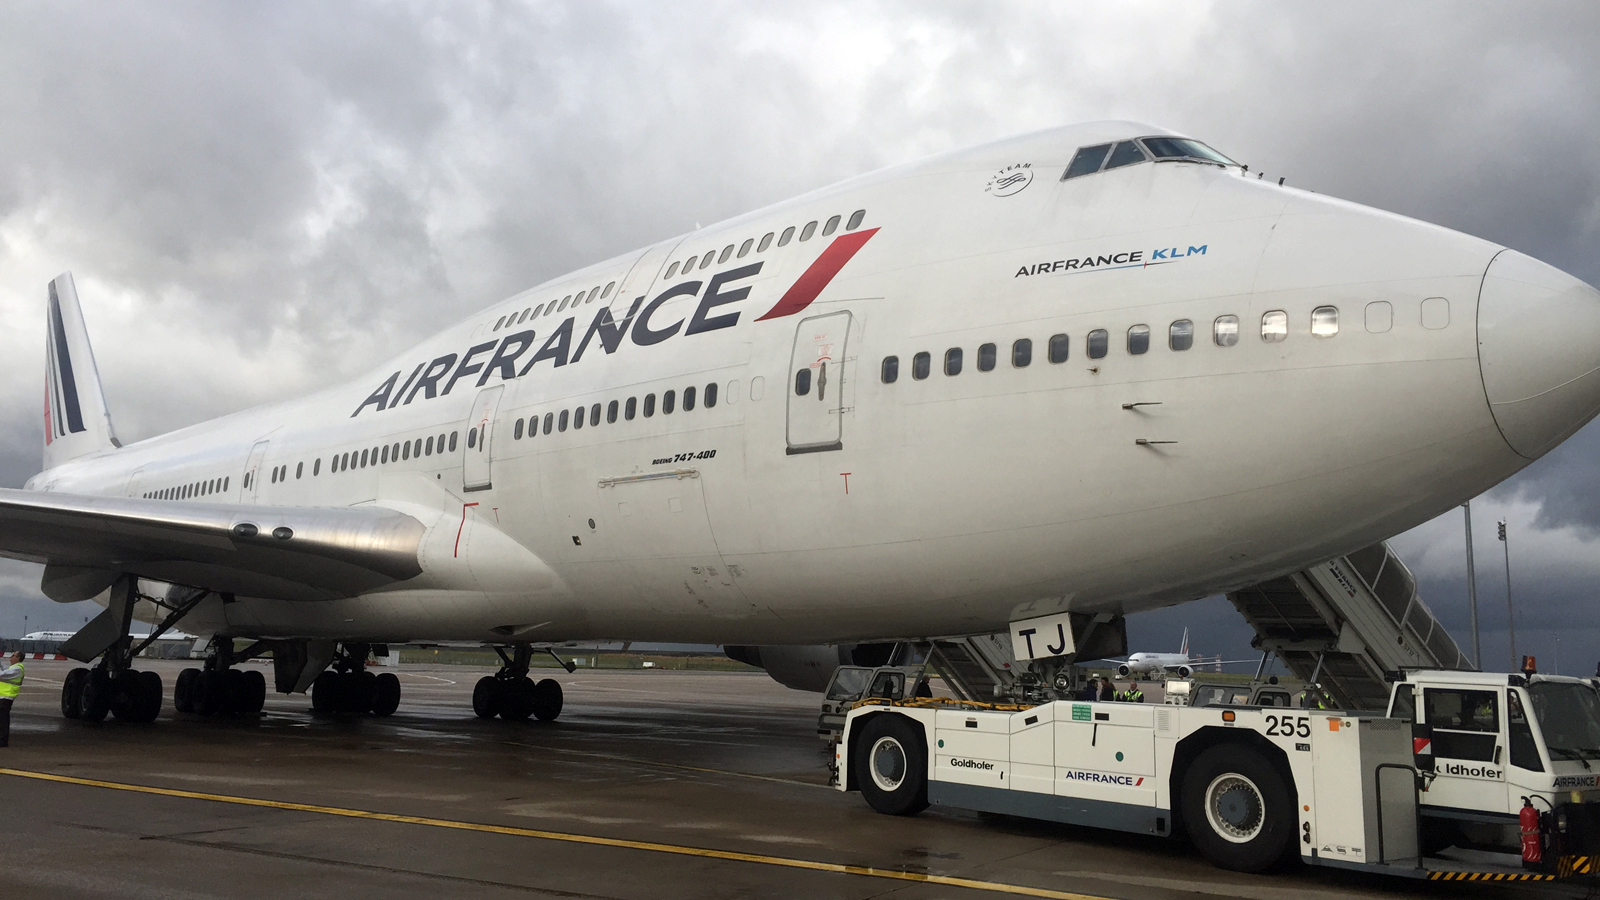 Airfrance Air France